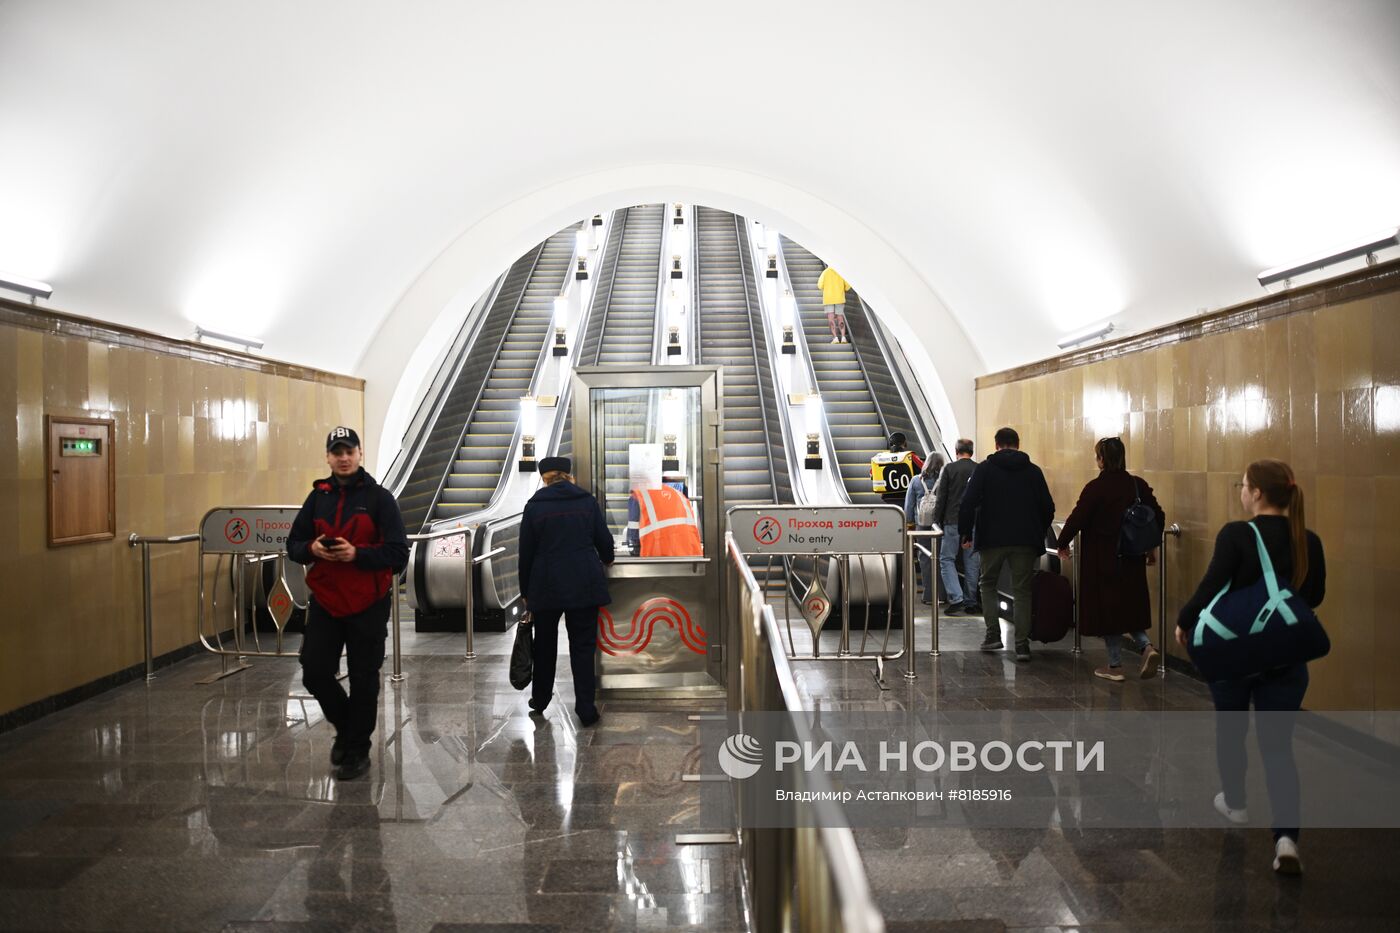 Станцию метро "Рижская" открыли после реконструкции